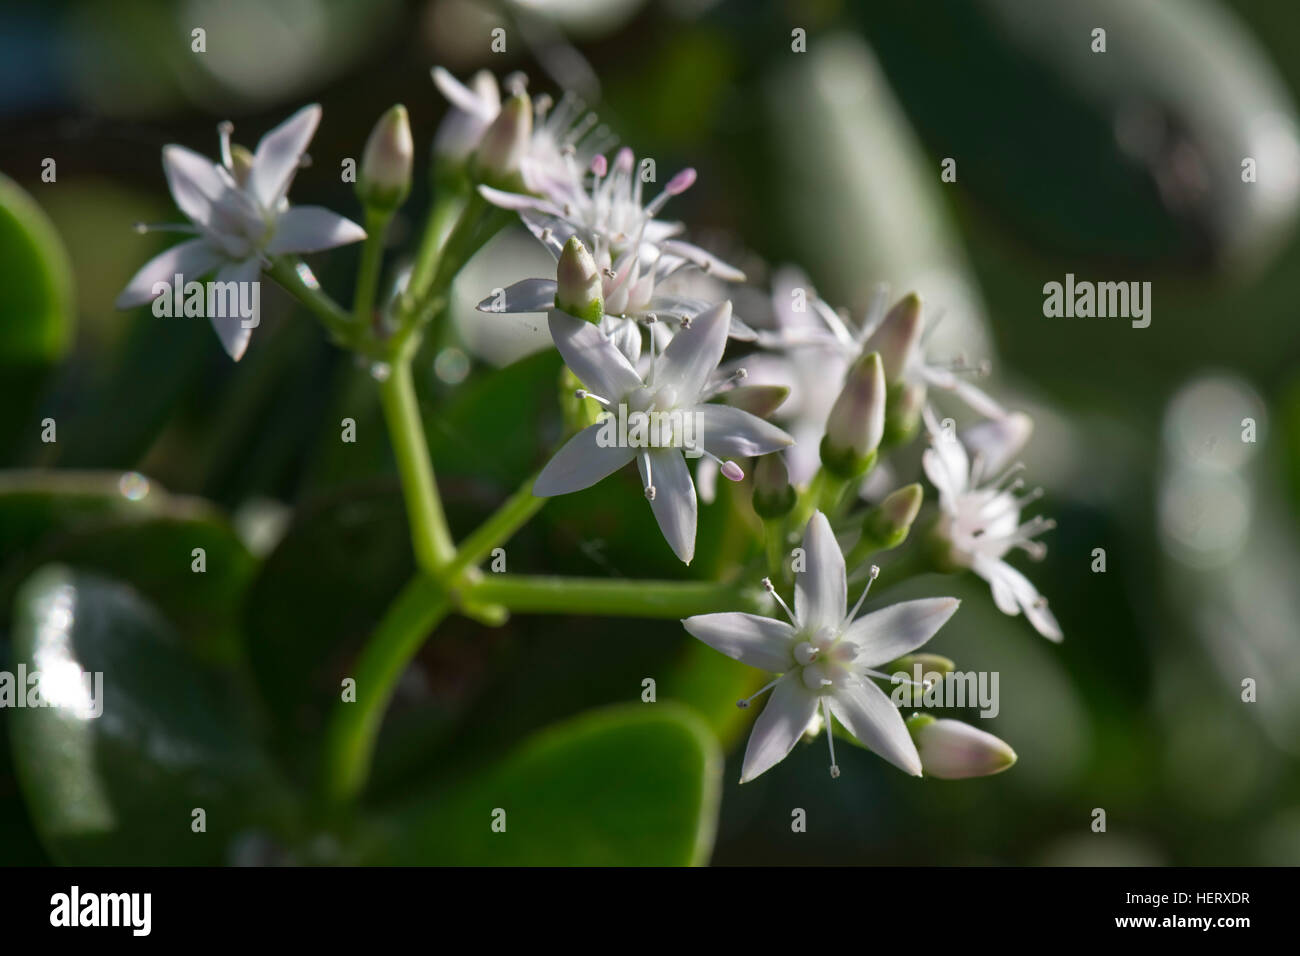 Árbol de dinero, jade tree, árbol de la suerte, Crassula ovata, flores blancas sobre las suculentas houseplant Foto de stock